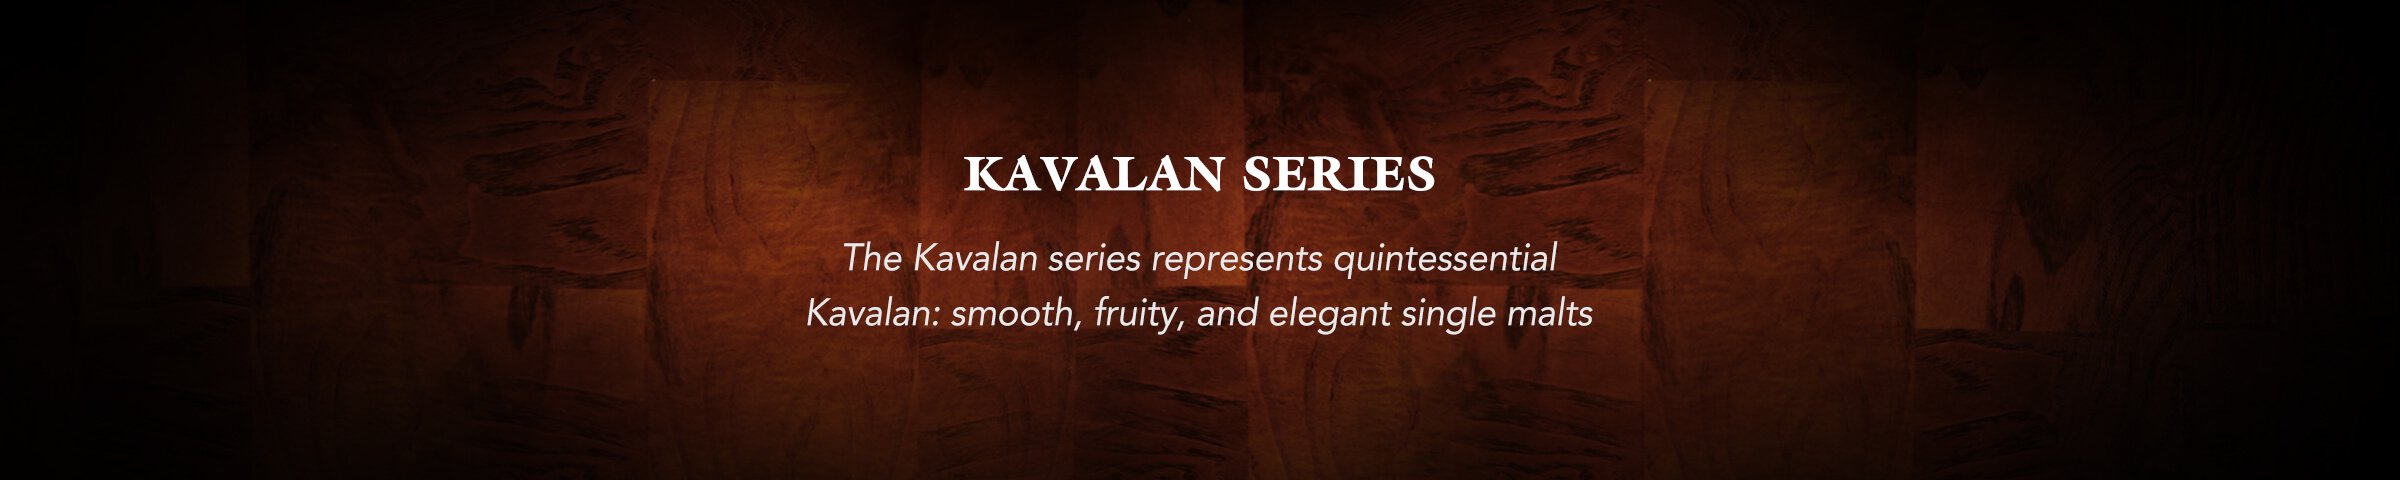 Kavalan Series